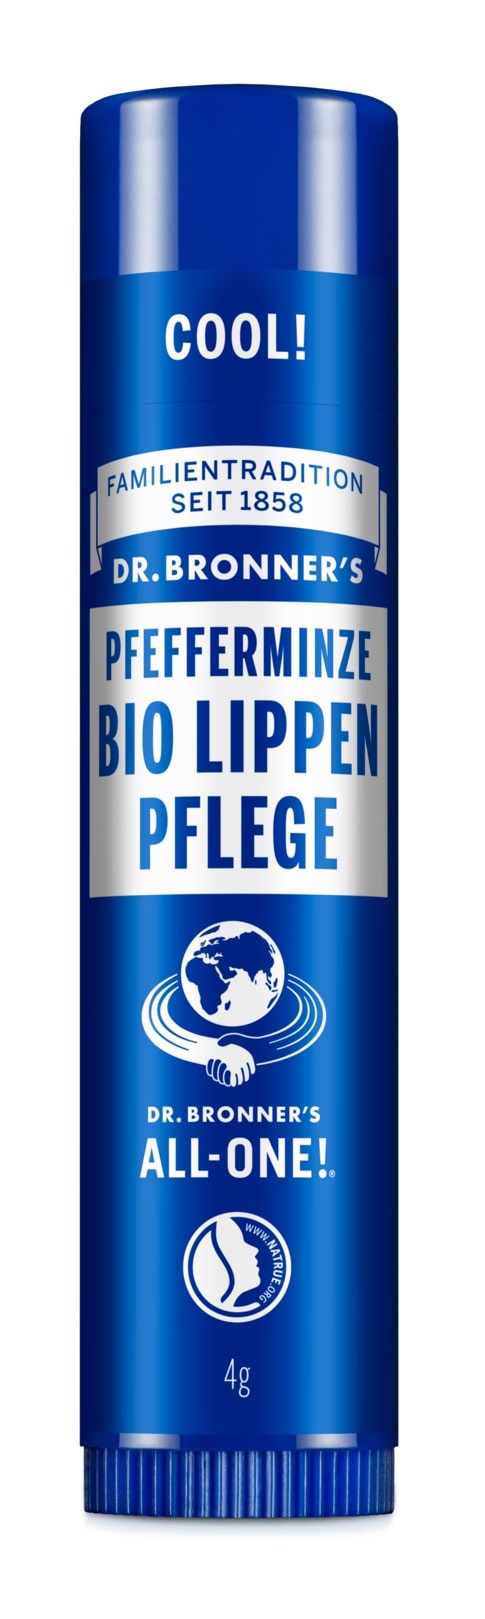 Bio Lippenpflege, Lip Balm von Dr.Bronner's Switzerland